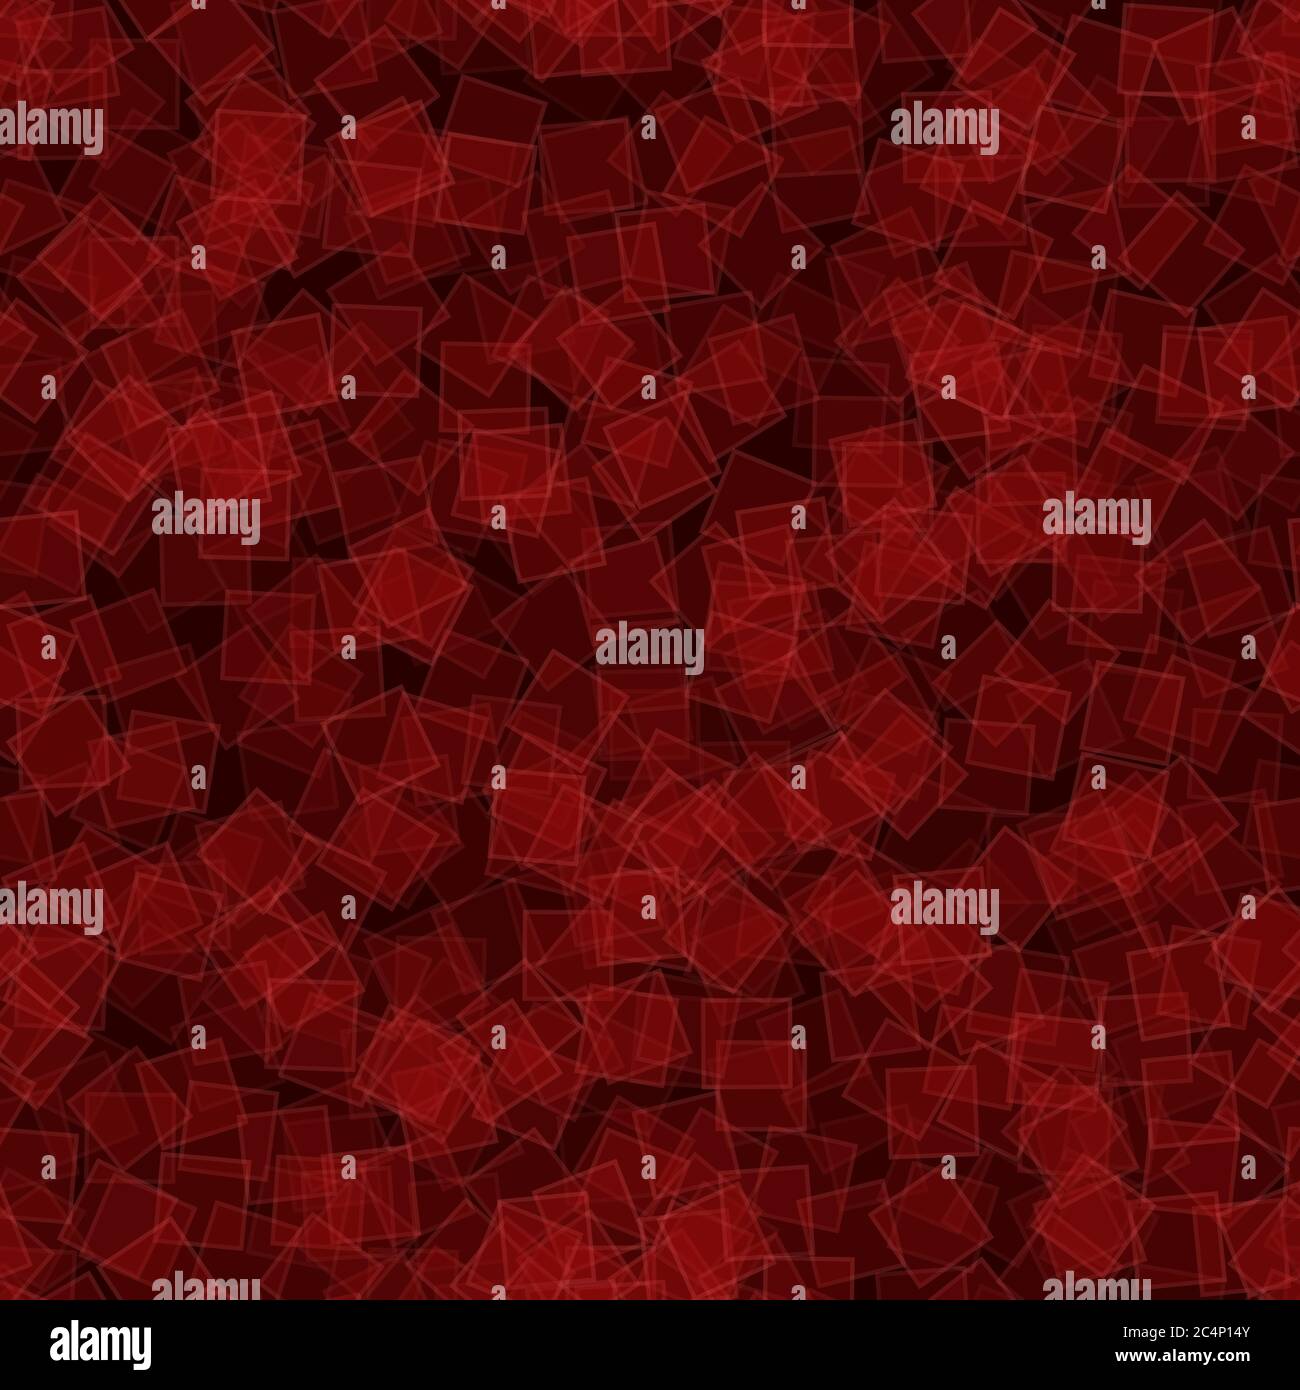 Abstraktes nahtloses Muster aus zufällig verteilten transluzenten Quadraten in roten Farben Stock Vektor